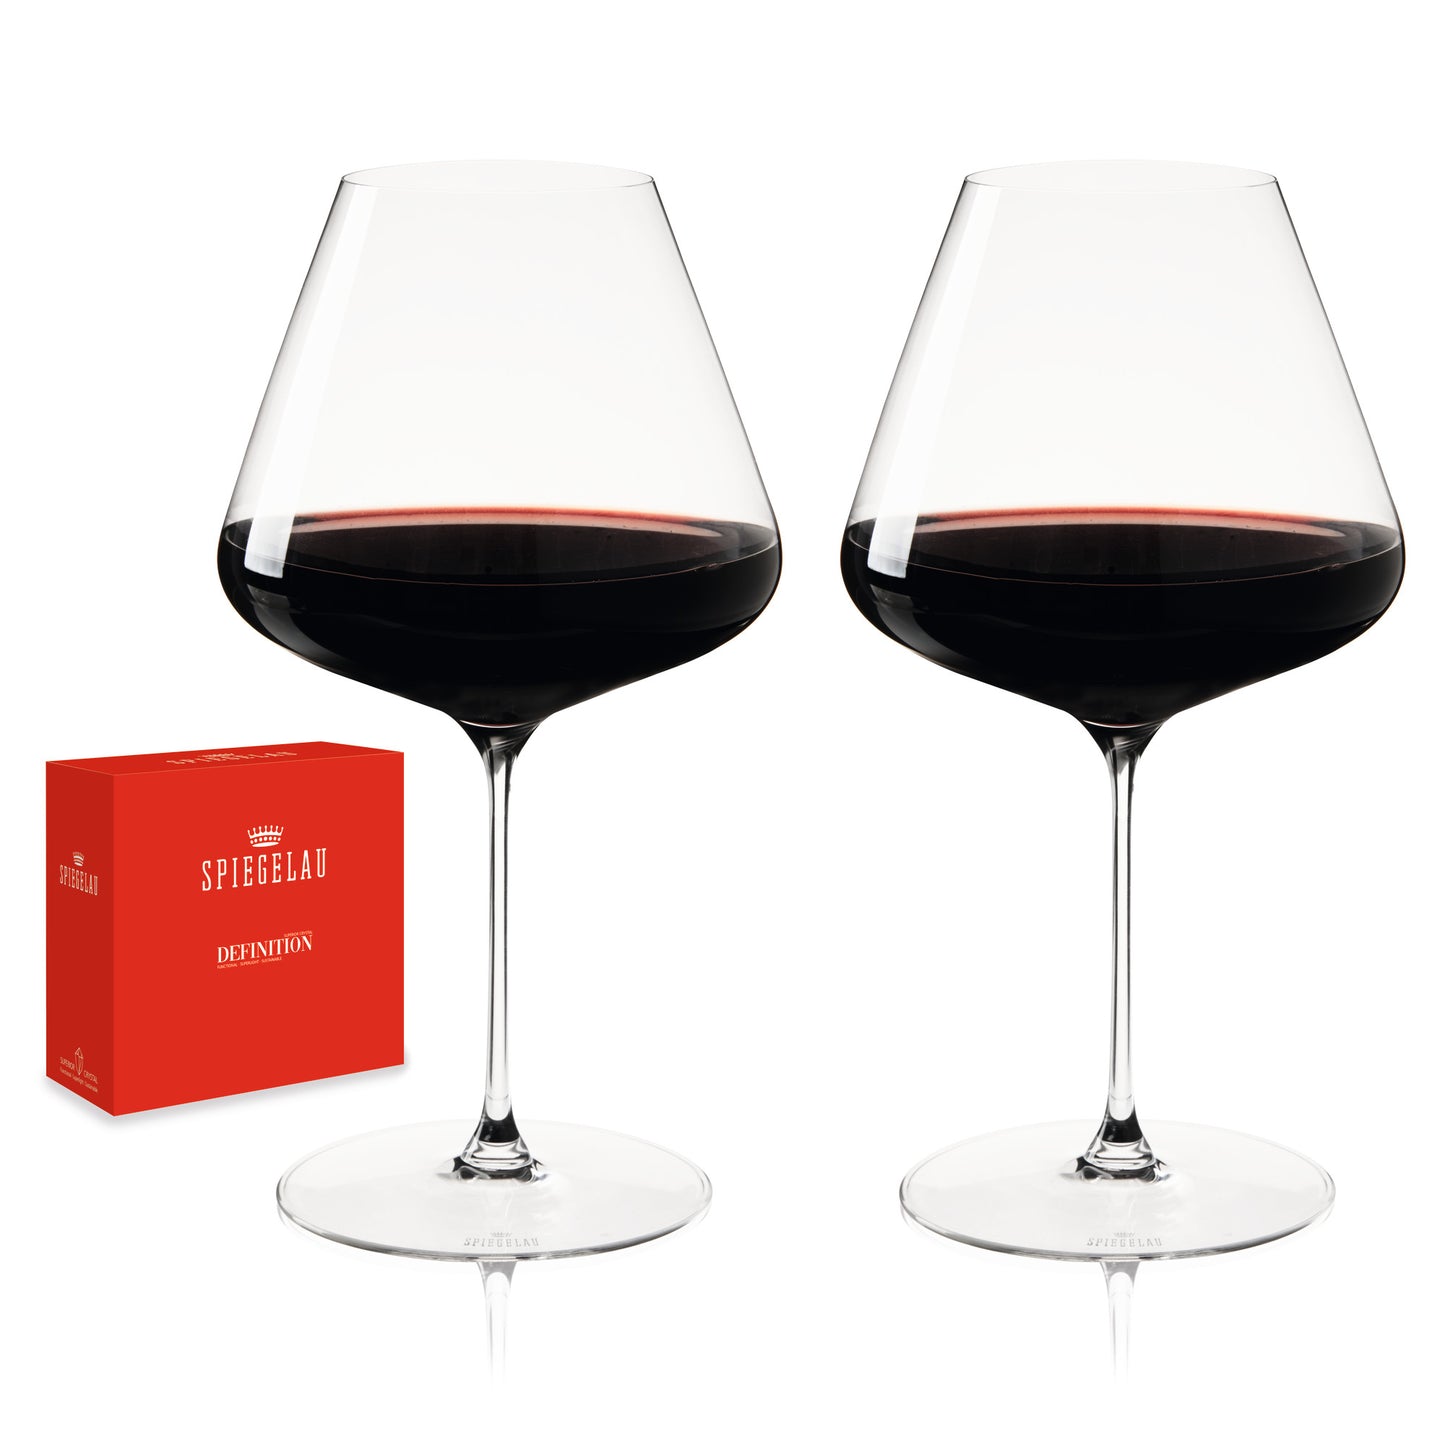 Spiegelau Definition 34 oz Burgundy Glass (set of 2)-0